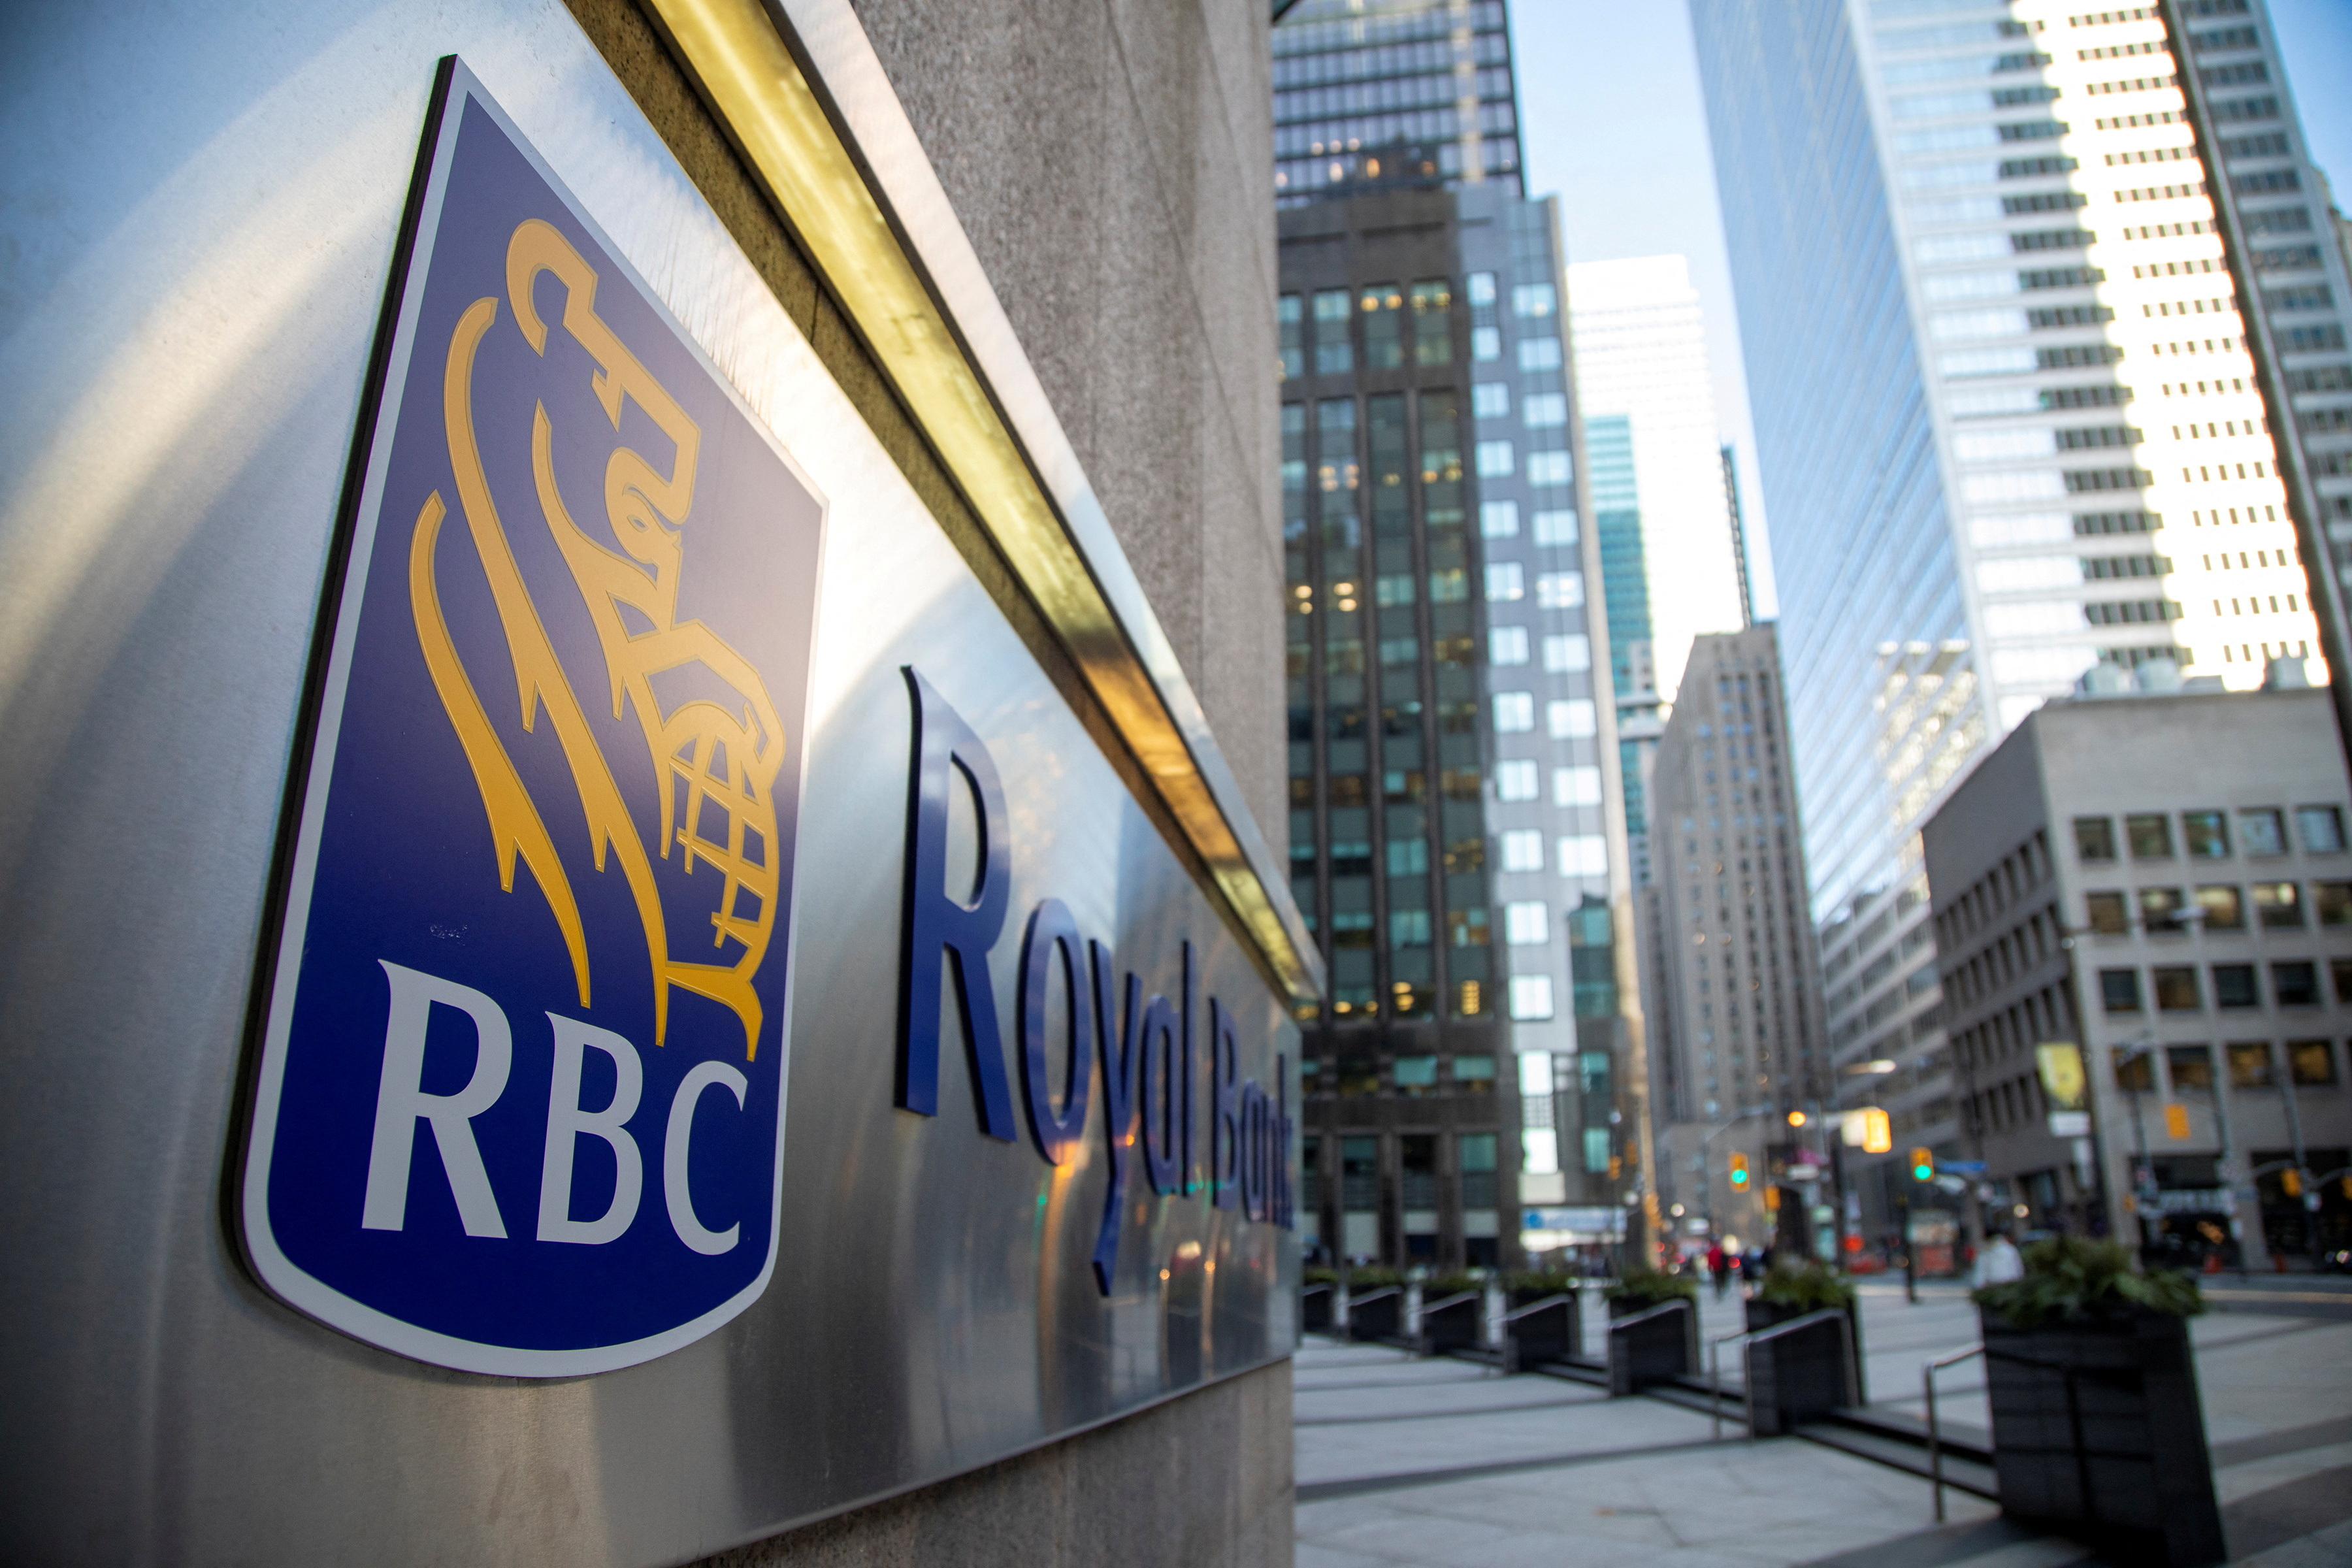 Il leader conservatore canadese sollecita il rifiuto dell’offerta di RBC per l’acquisto di HSBC Canada – media